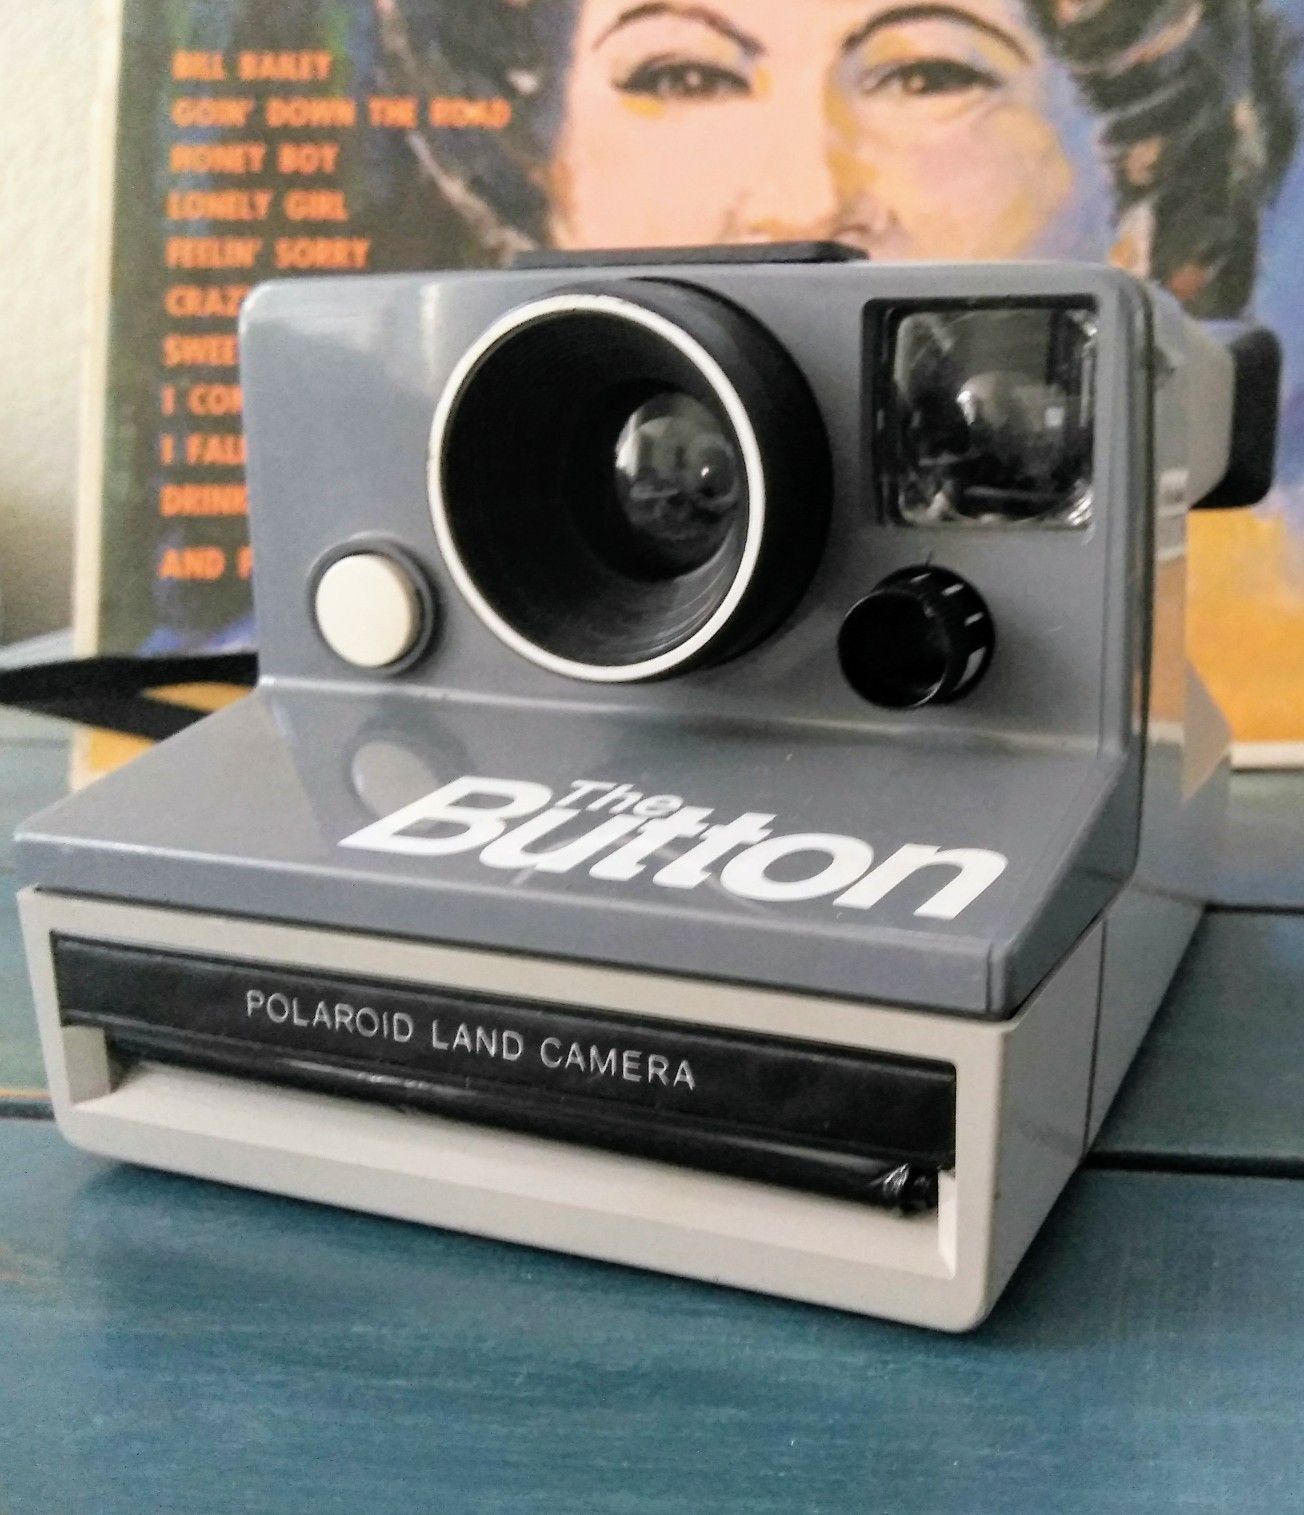 Polaroid "the button" film camera